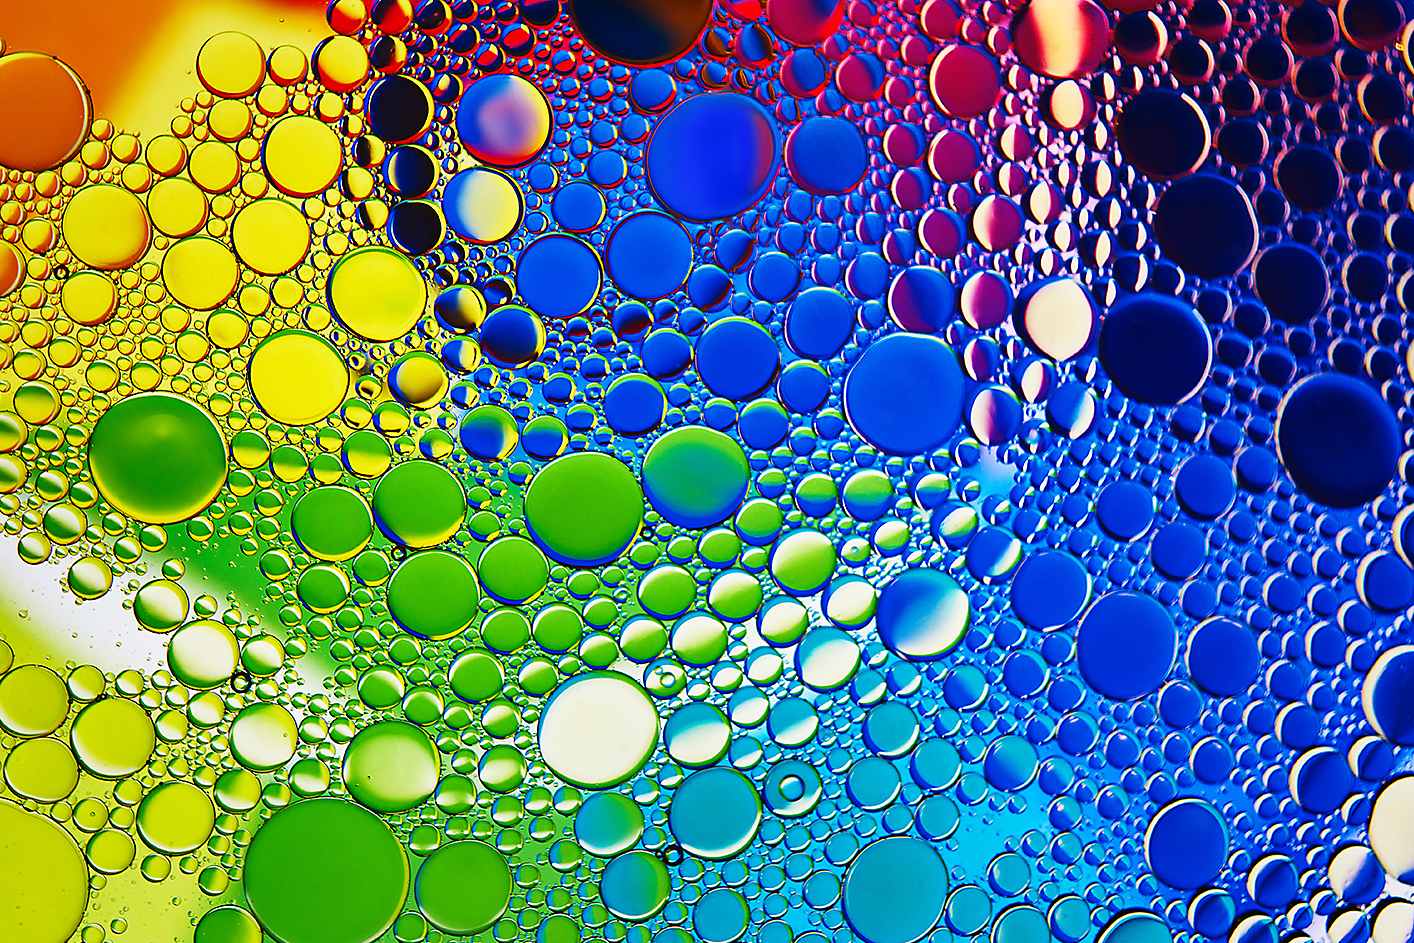 Captura de pantalla que muestra burbujas de colores en diferentes tonos y tamaños